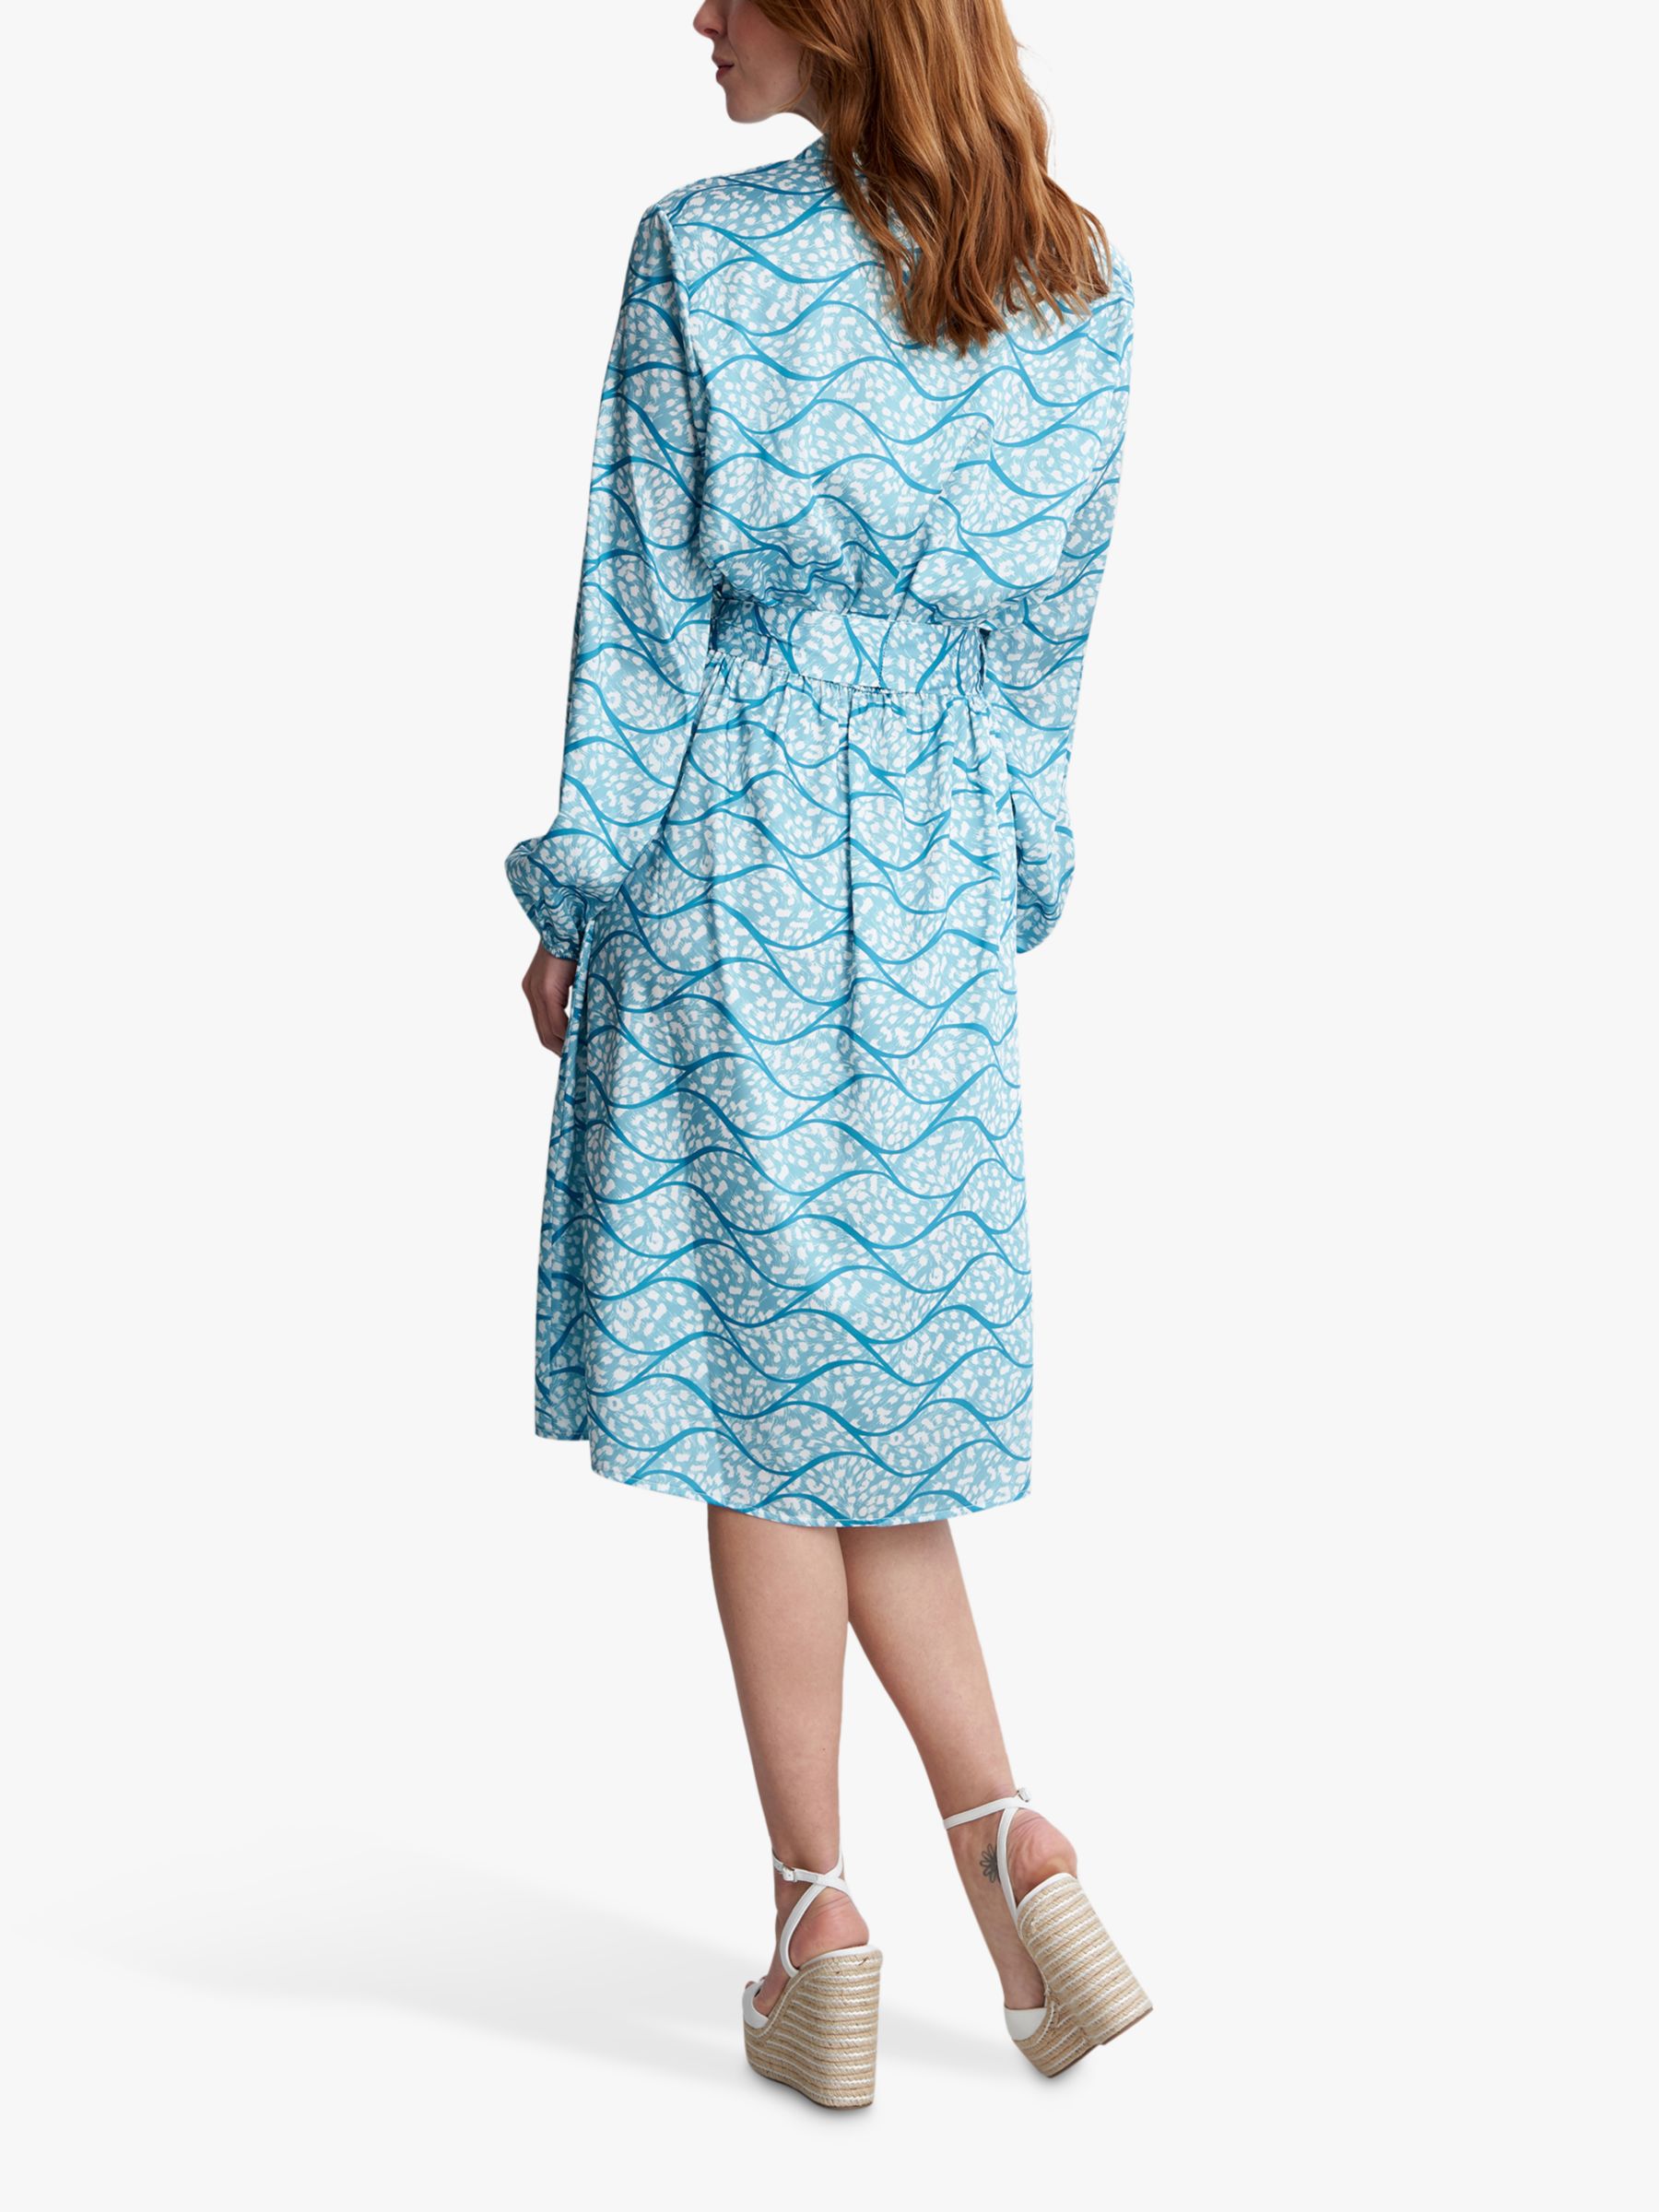 Gina Bacconi Rotem Long Sleeve Shirt Dress, Turquoise, S